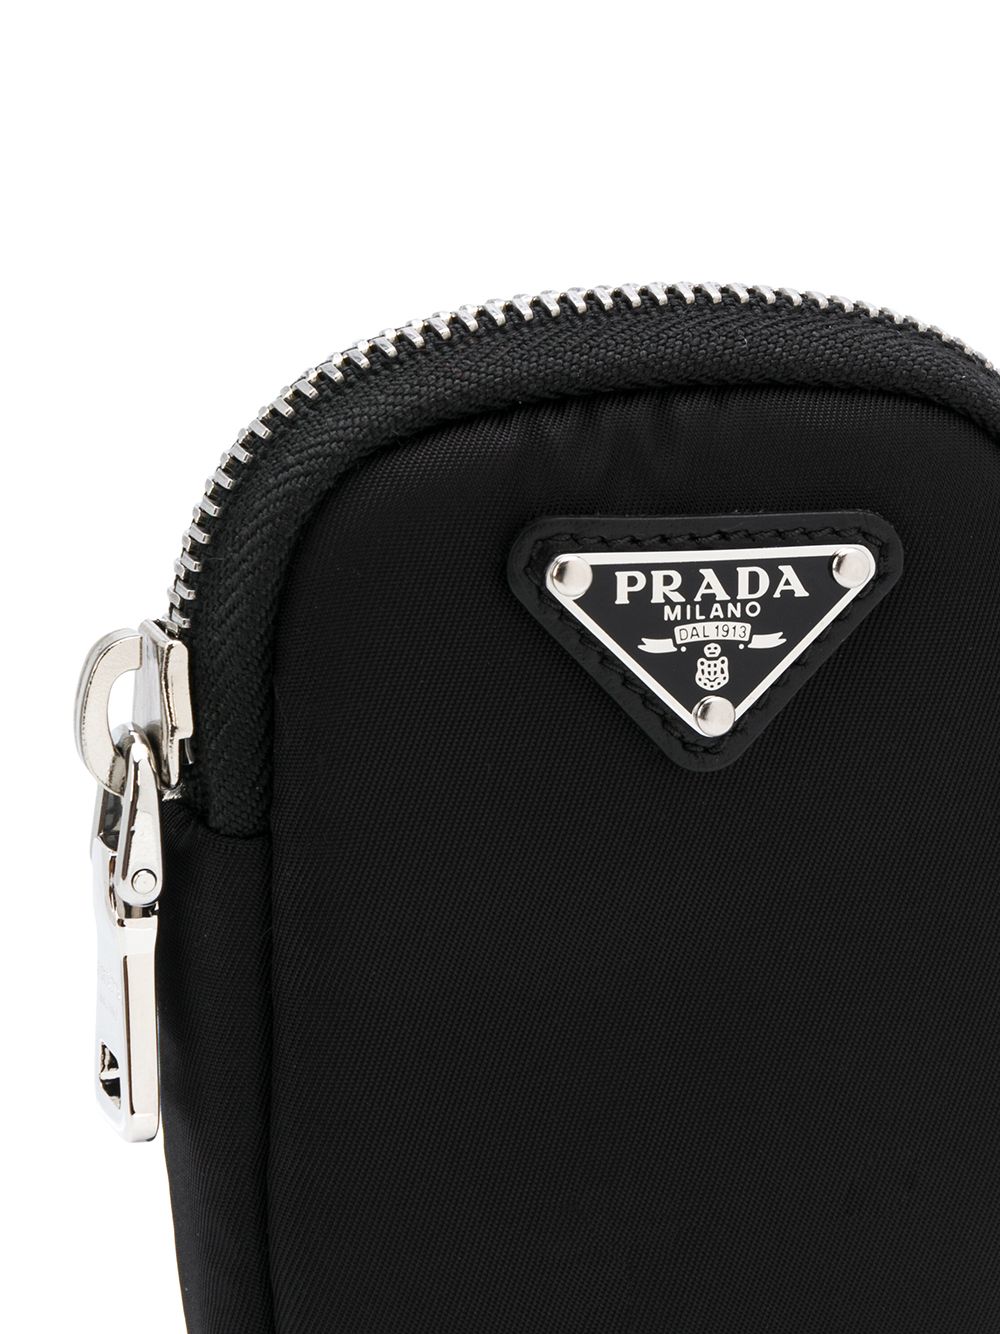 фото Prada мини-сумка на молнии с металлическим логотипом